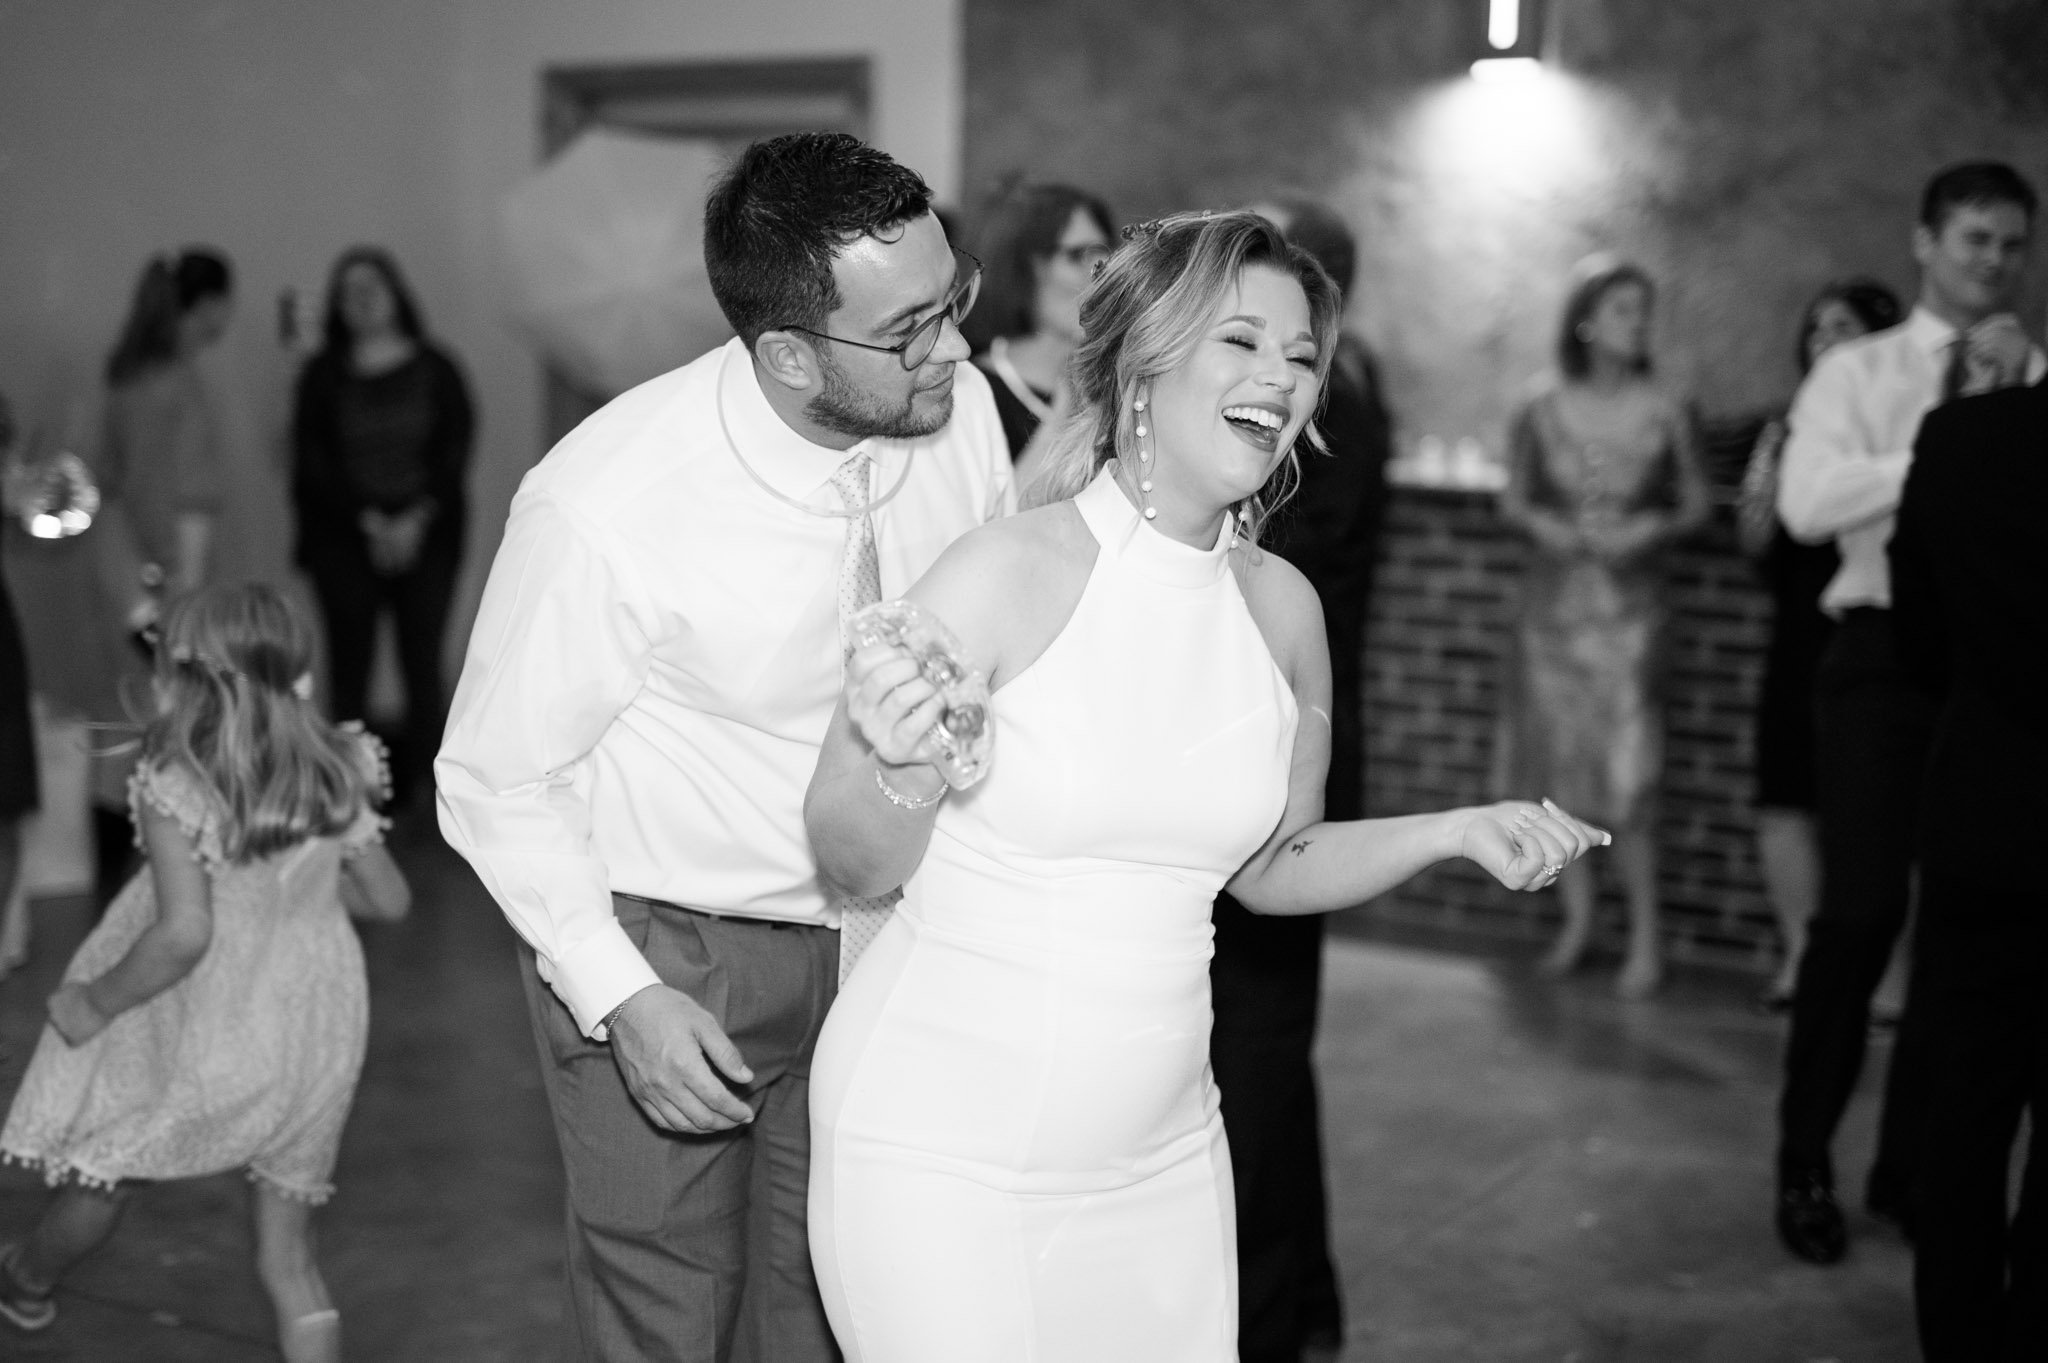 Bridesmaid dances at wedding reception.